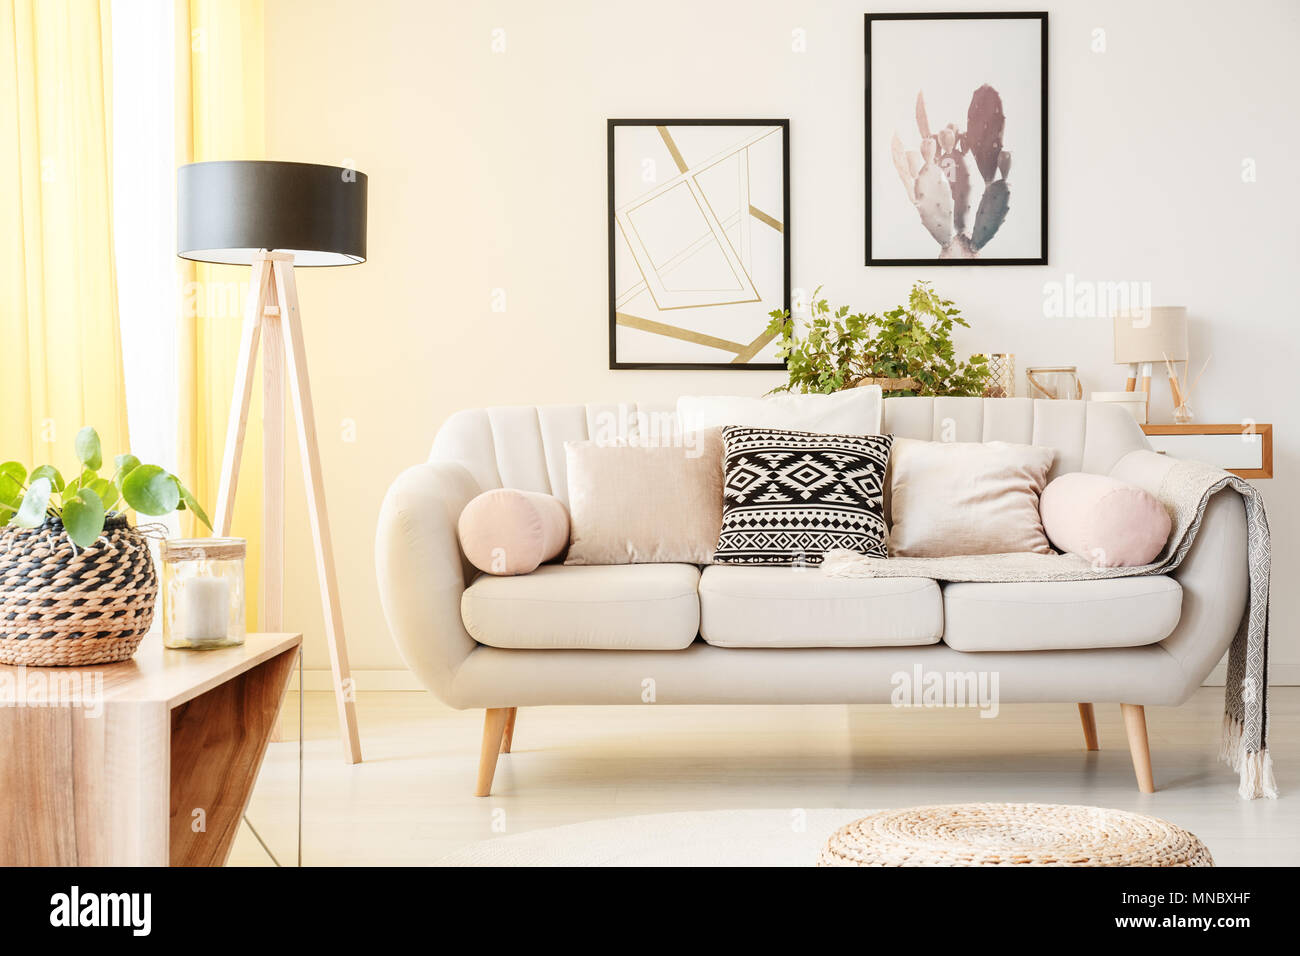 Gemusterten Kissen auf einem beigen Couch neben Lampe und Anlage auf einem  Schrank in einfachen Wohnzimmer mit Poster an der Wand Stockfotografie -  Alamy